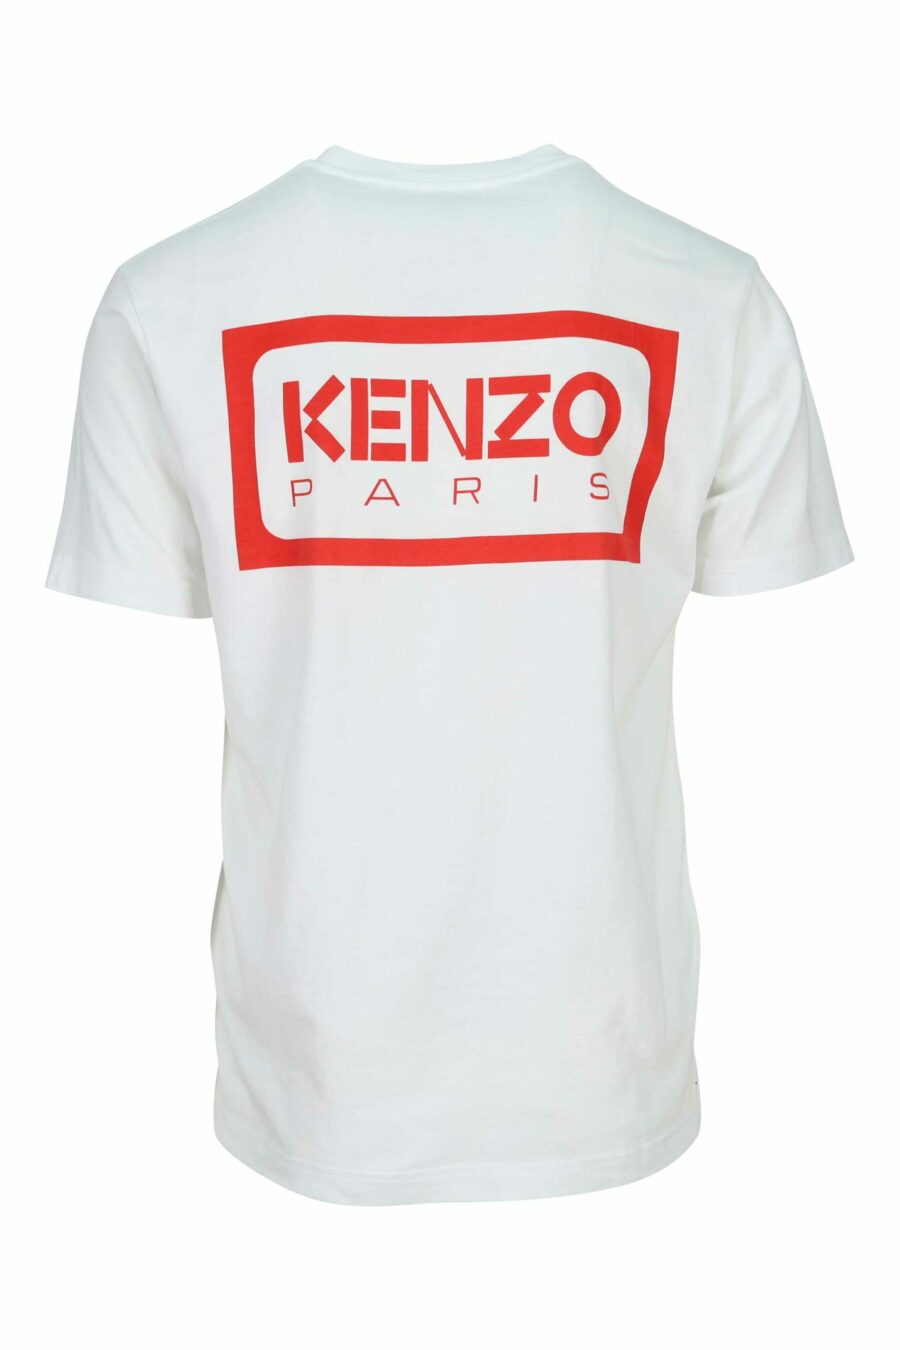 Camiseta blanca con minilogo "KP classic" - 3612230624641 3 scaled